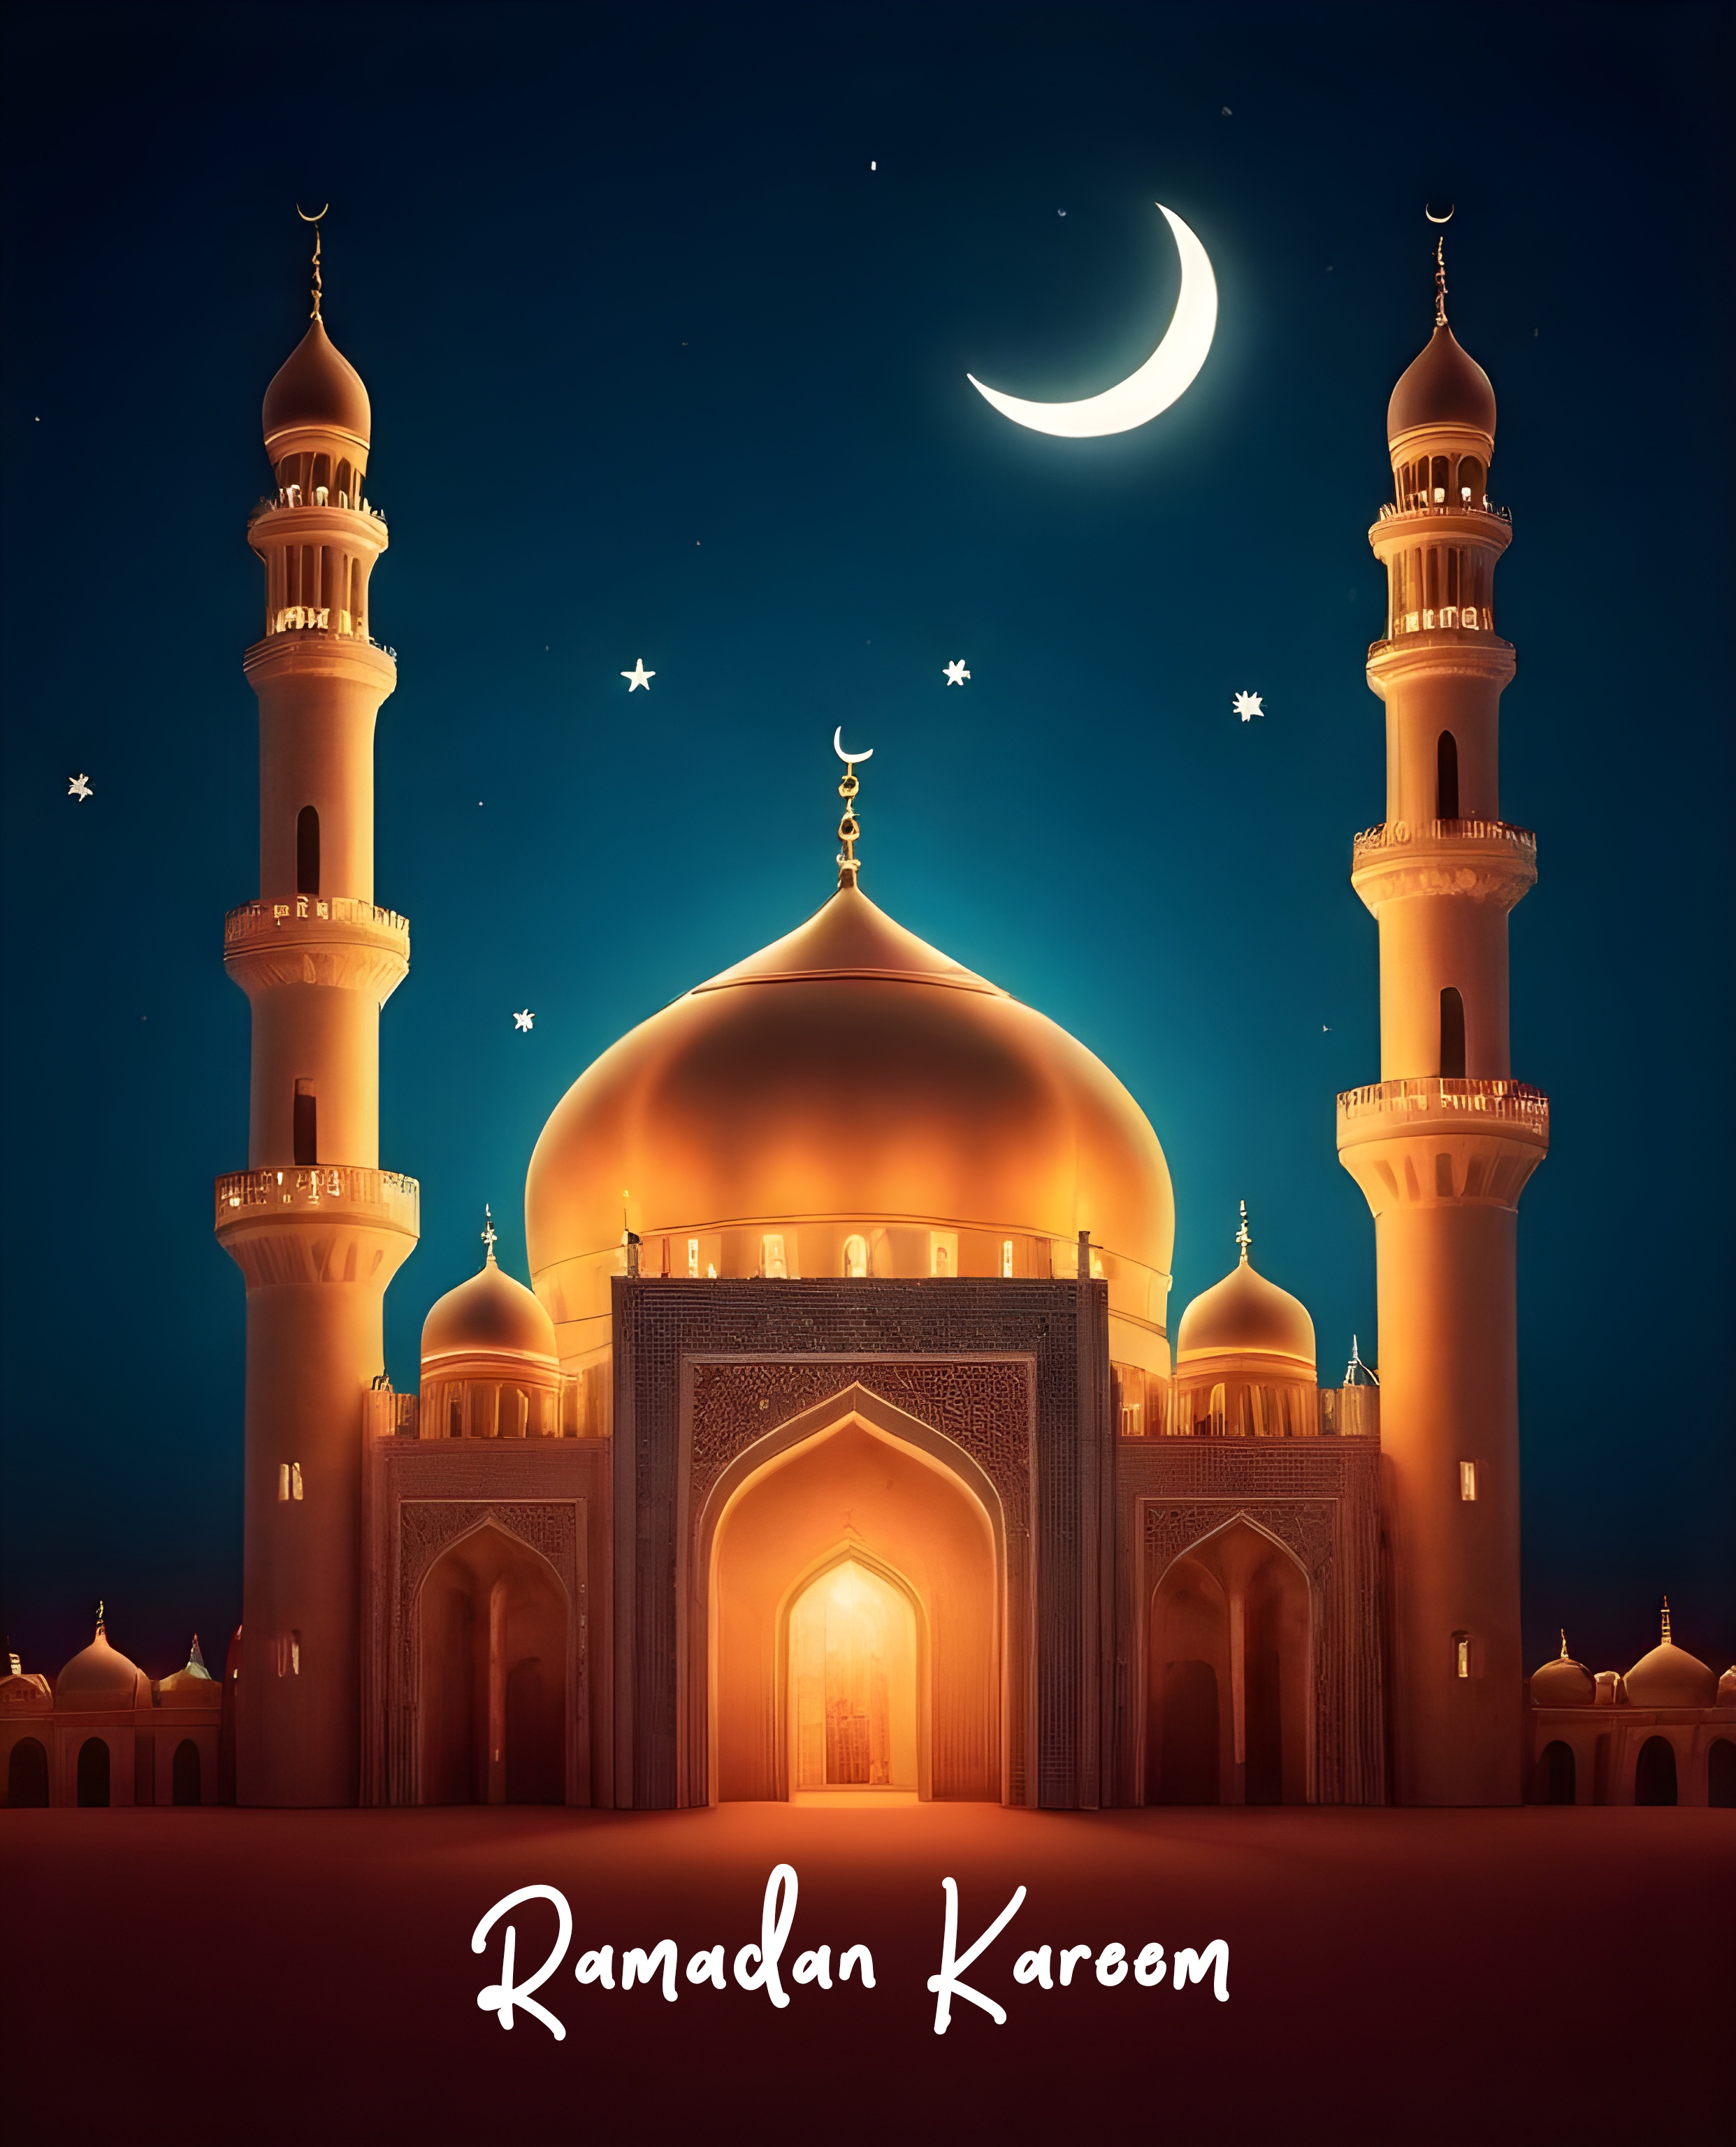 Free Ramadan Kareem Poster: Download Now